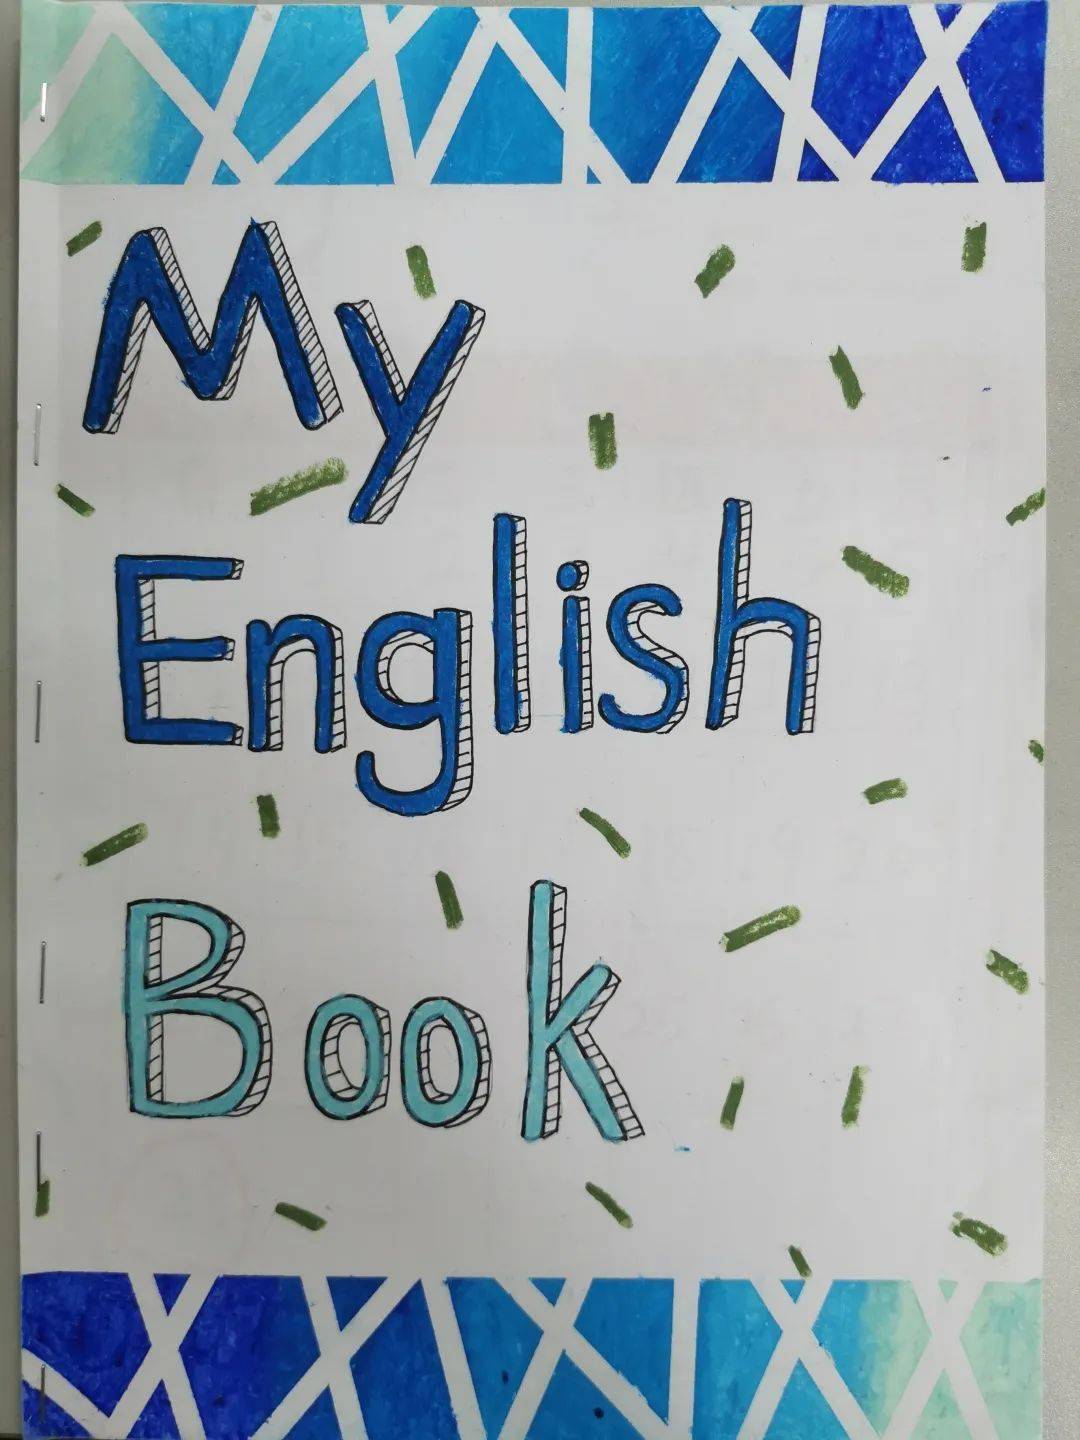 英语小册子封面设计图片